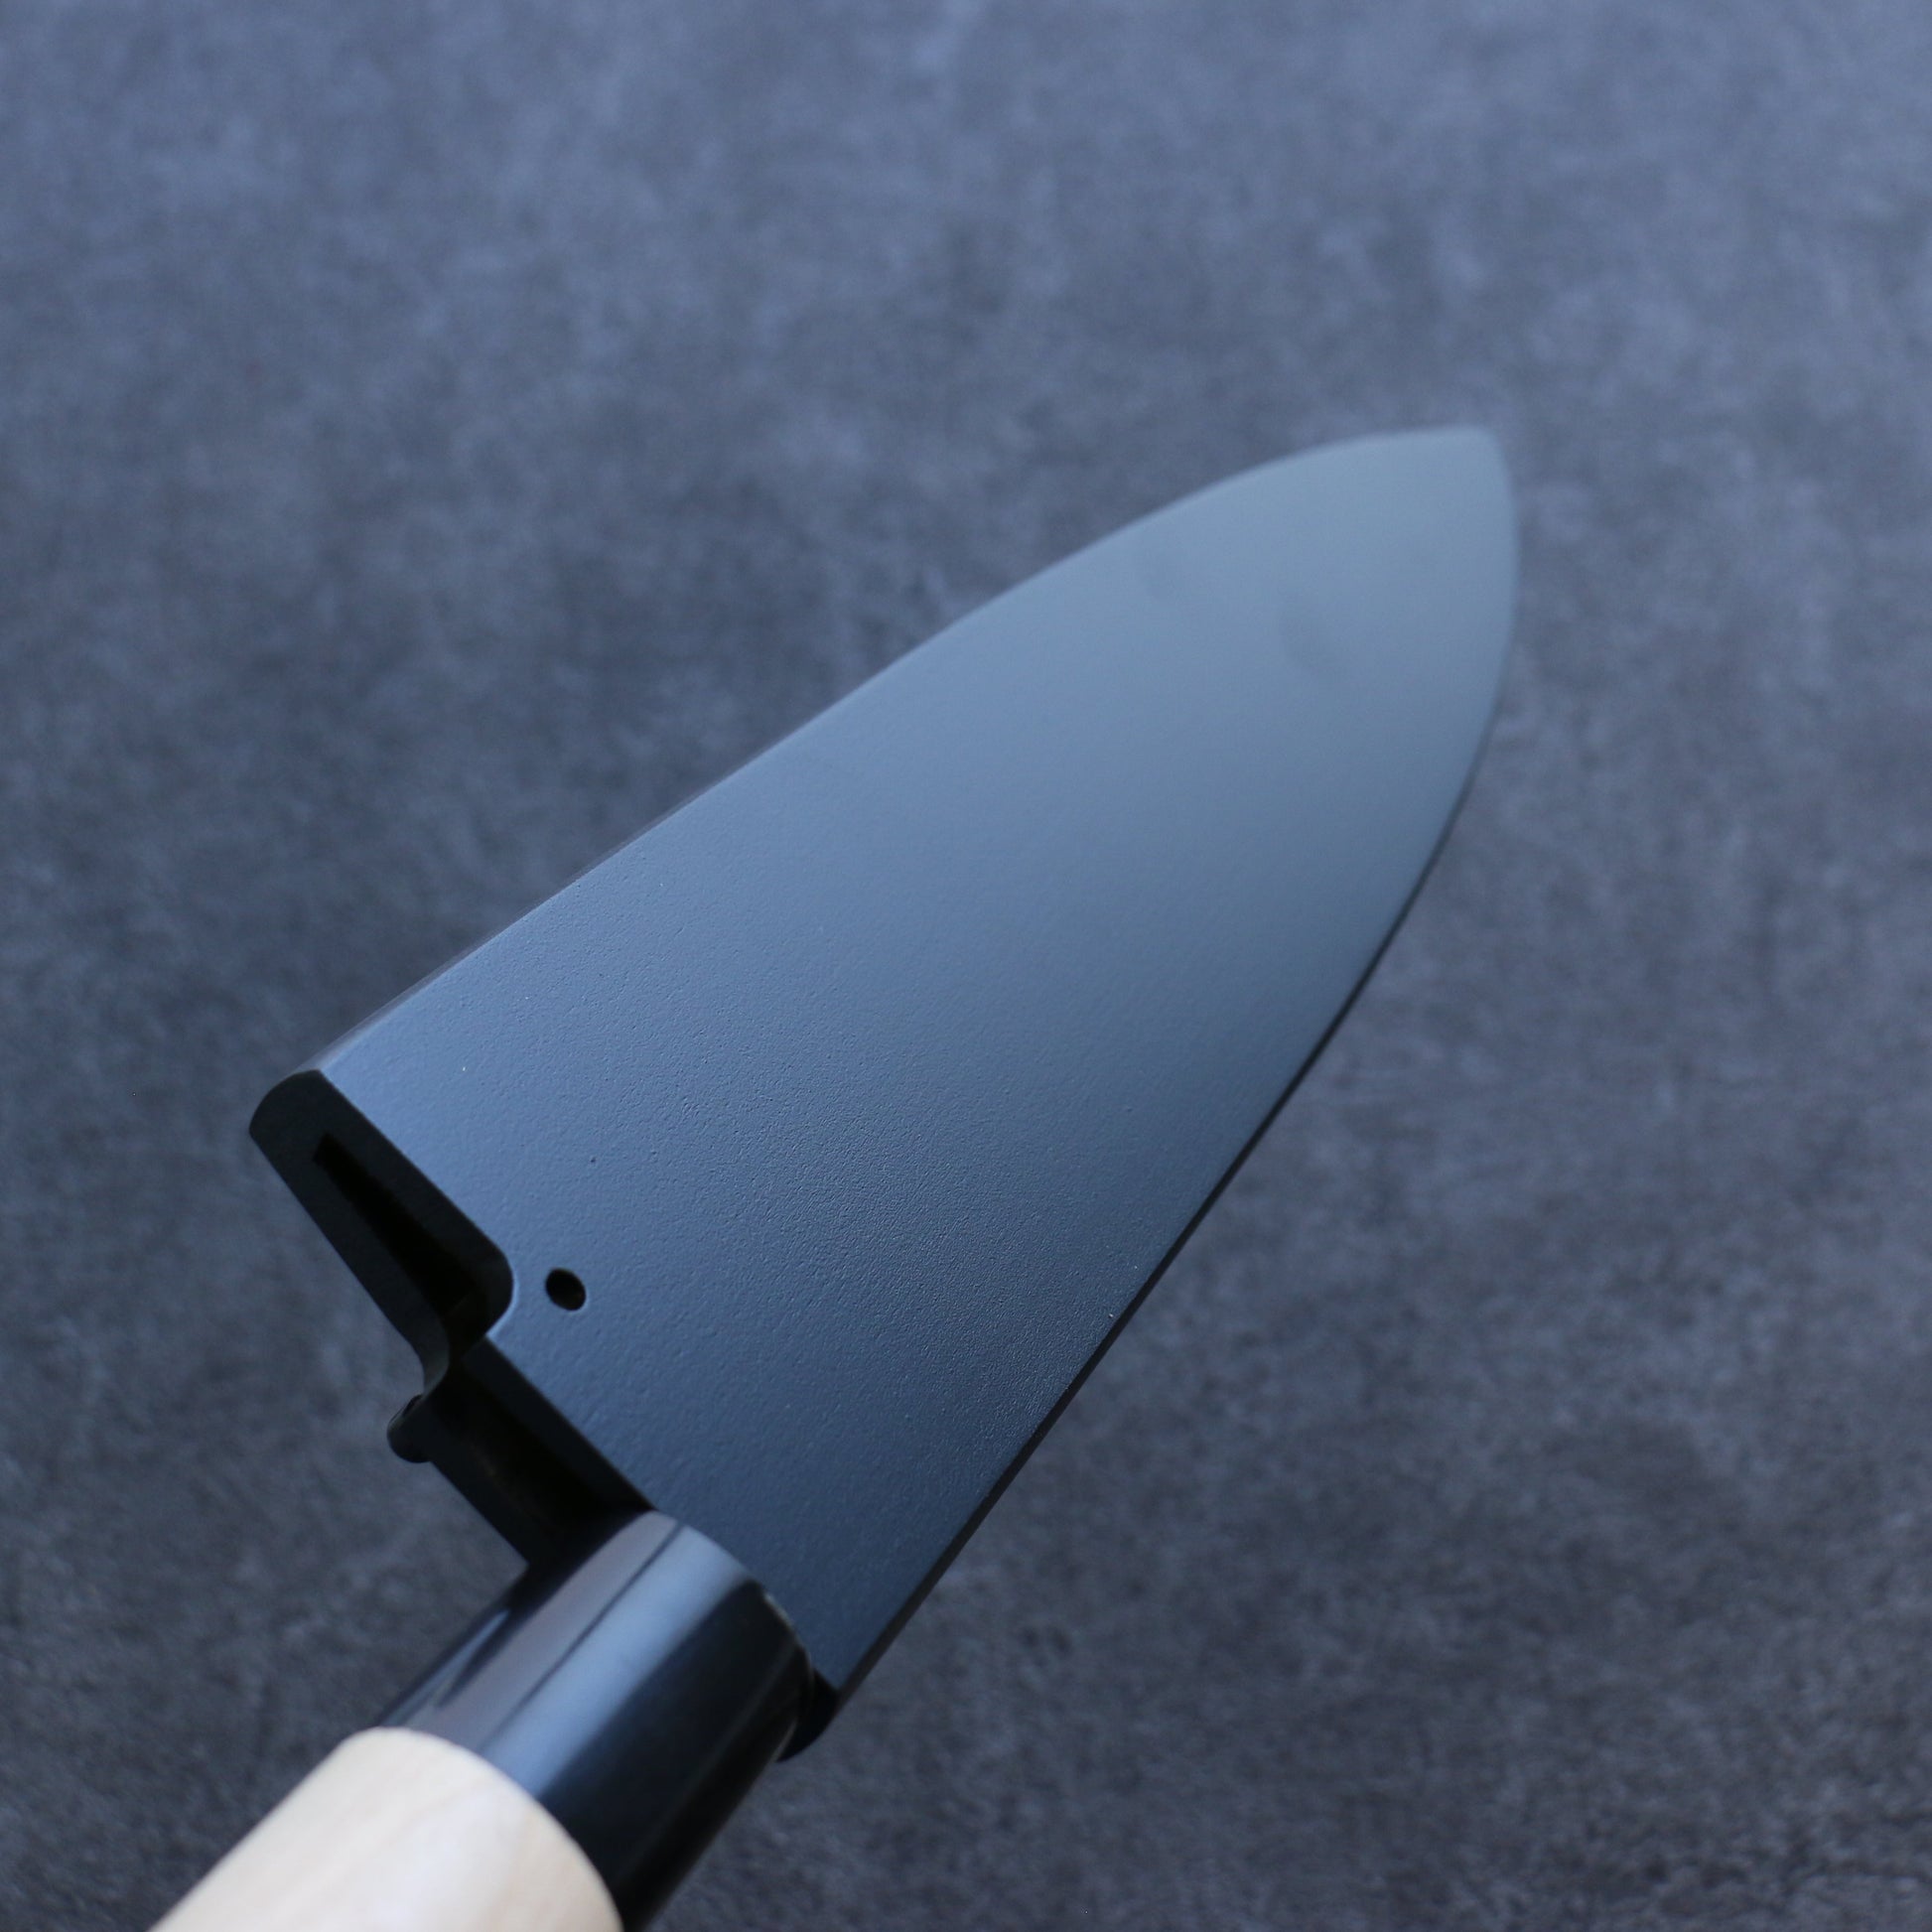 黒 朴 鞘 225mm 出刃包丁用 合板ピン付き - 清助刃物